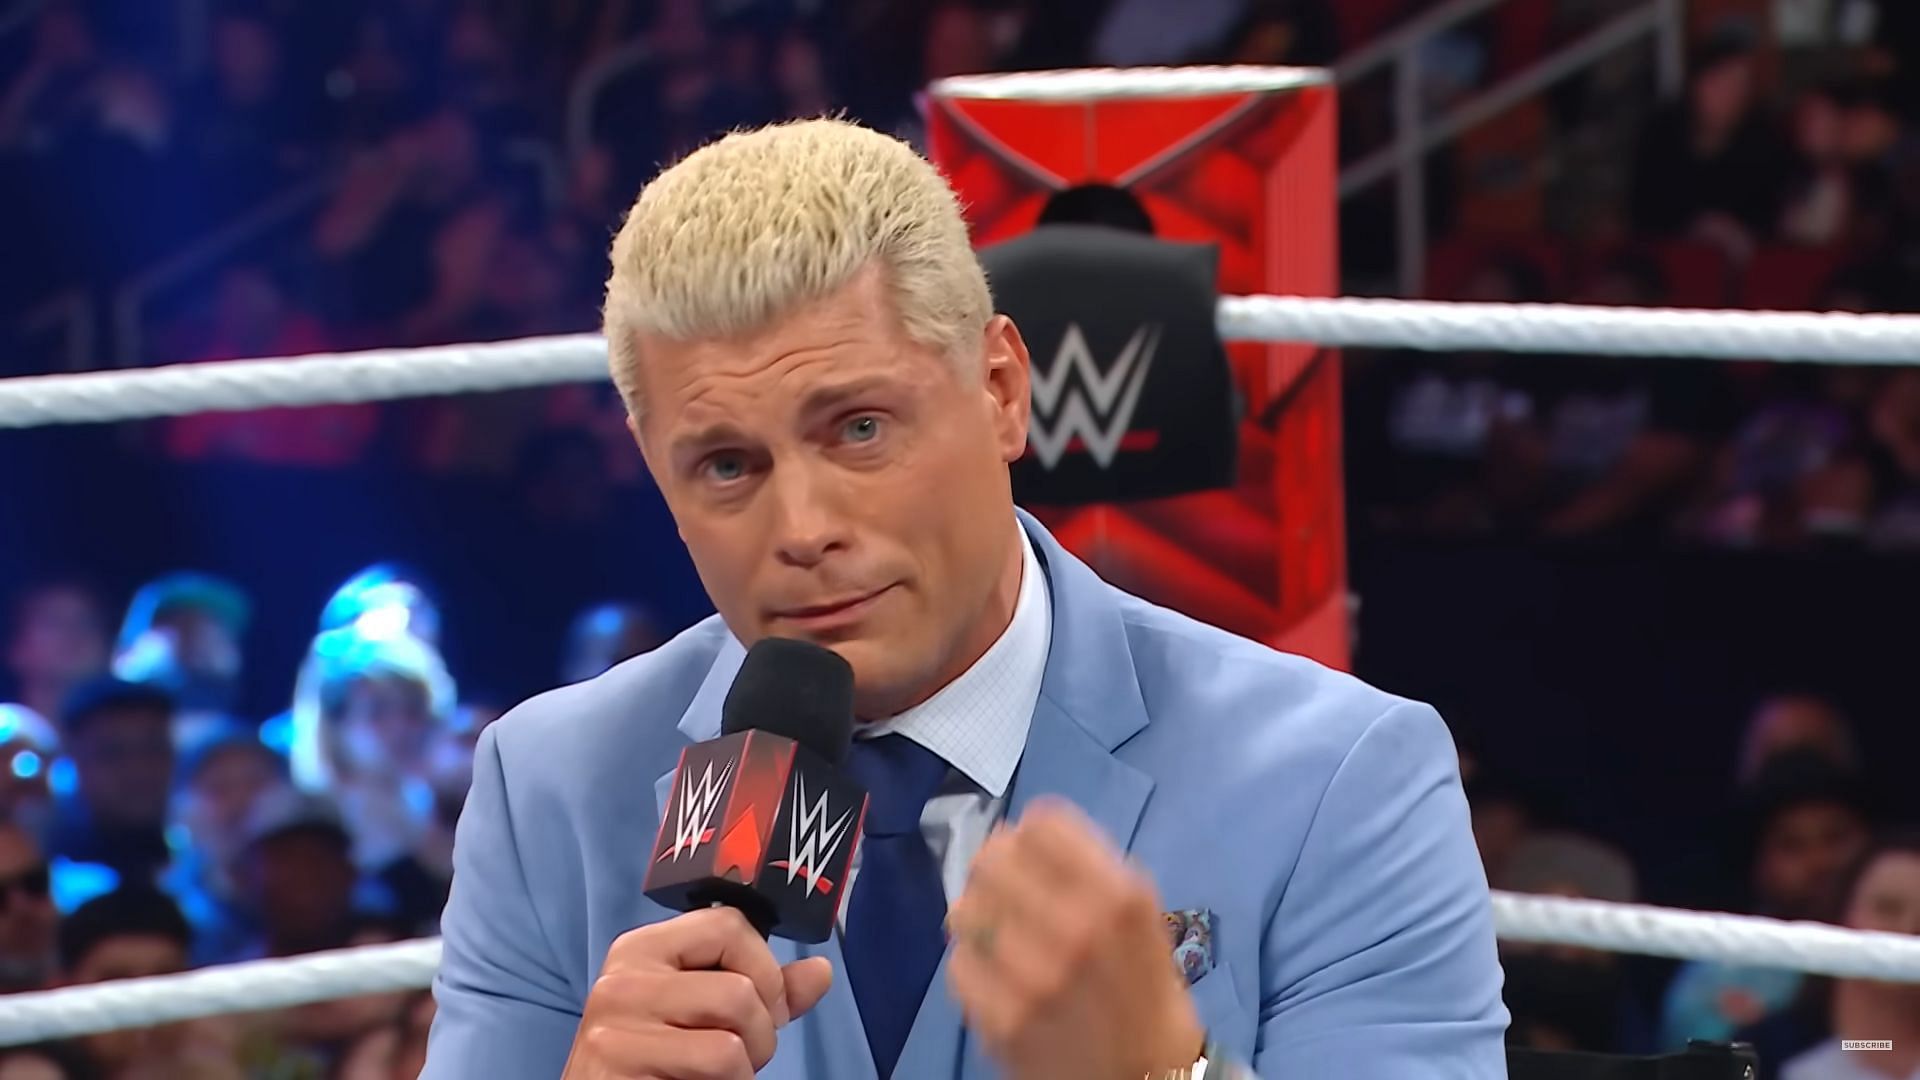 Cody Rhodes cutting a promo (via WWE